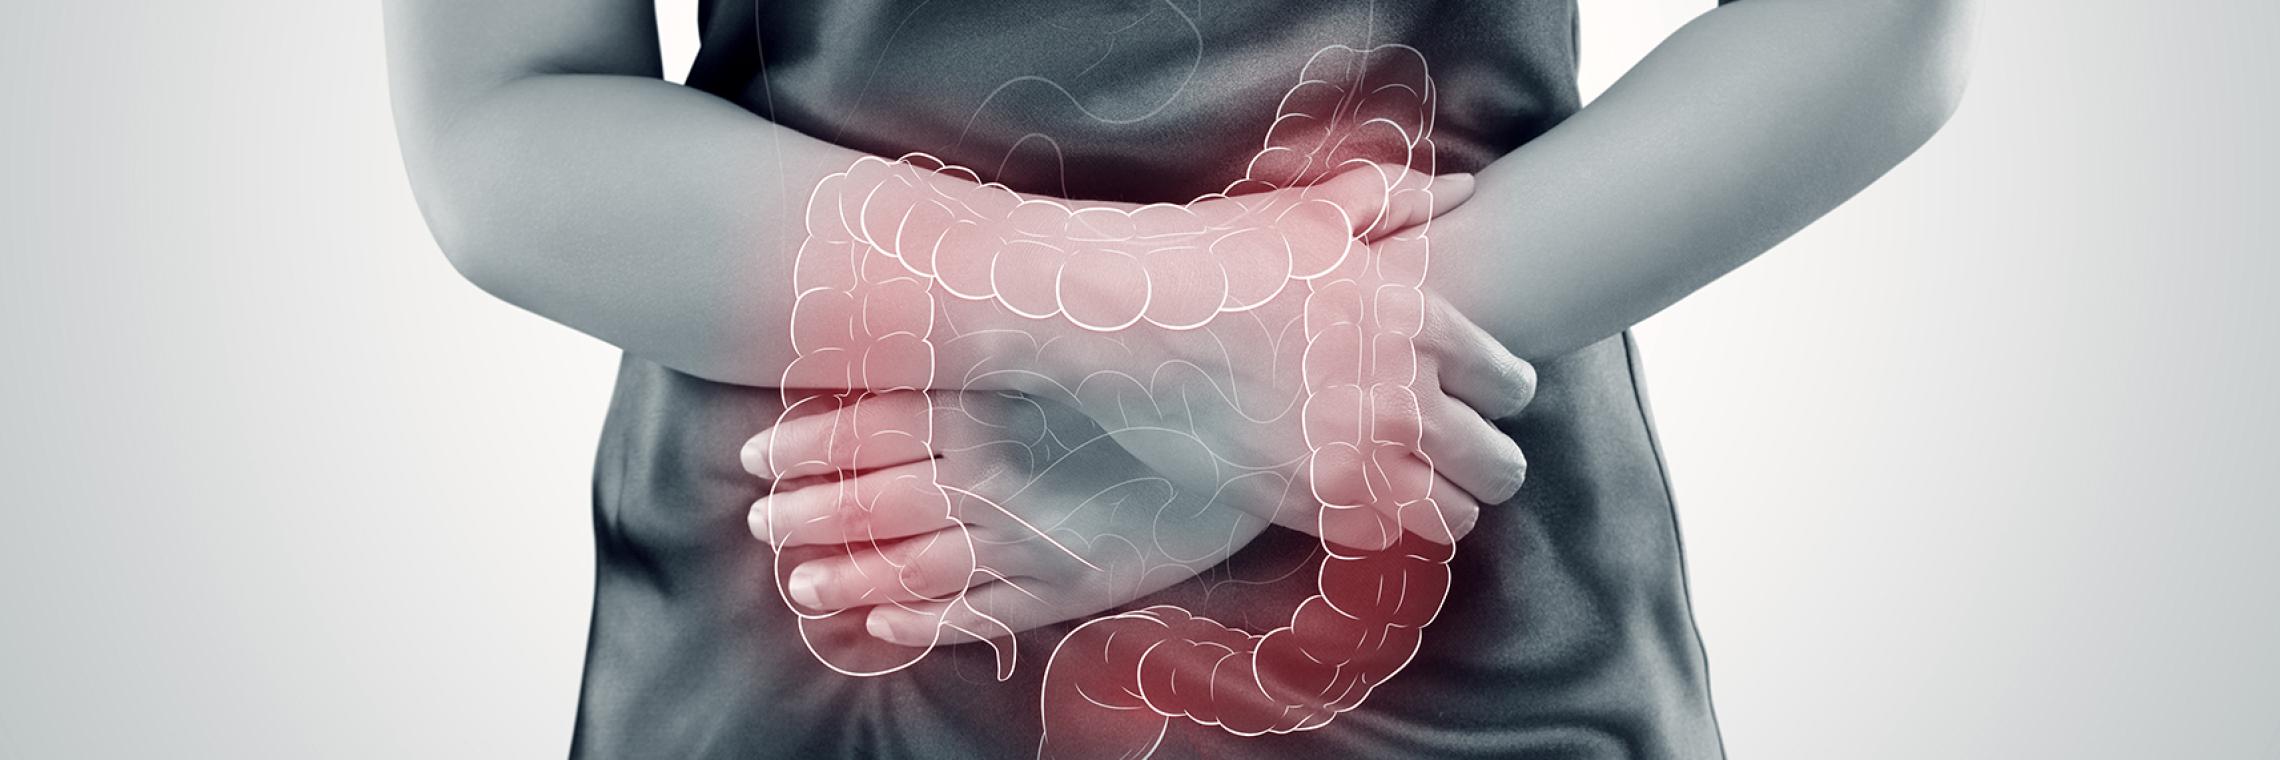 Typisch für Colitis ulcerosa ist ein entzündeter Dickdarm, der u. a. Diarrhöen mit Bauchschmerzen verursacht.